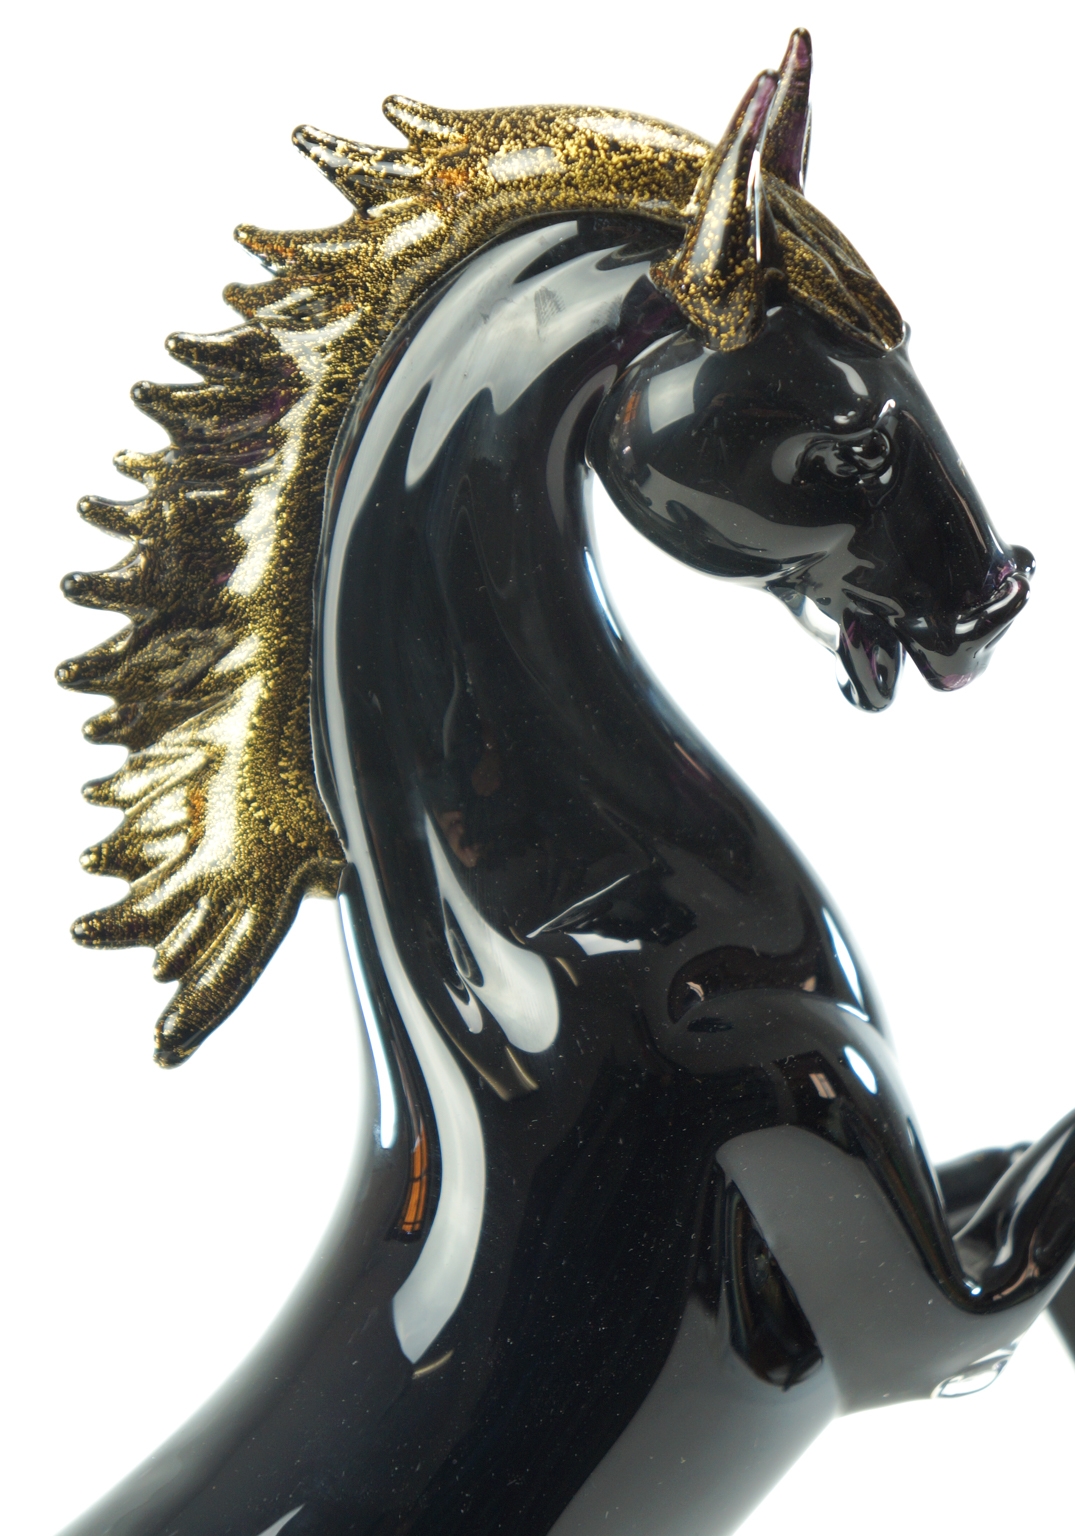 Murano Glass Animals - Black Horse - Murano Art - Made Murano Glass